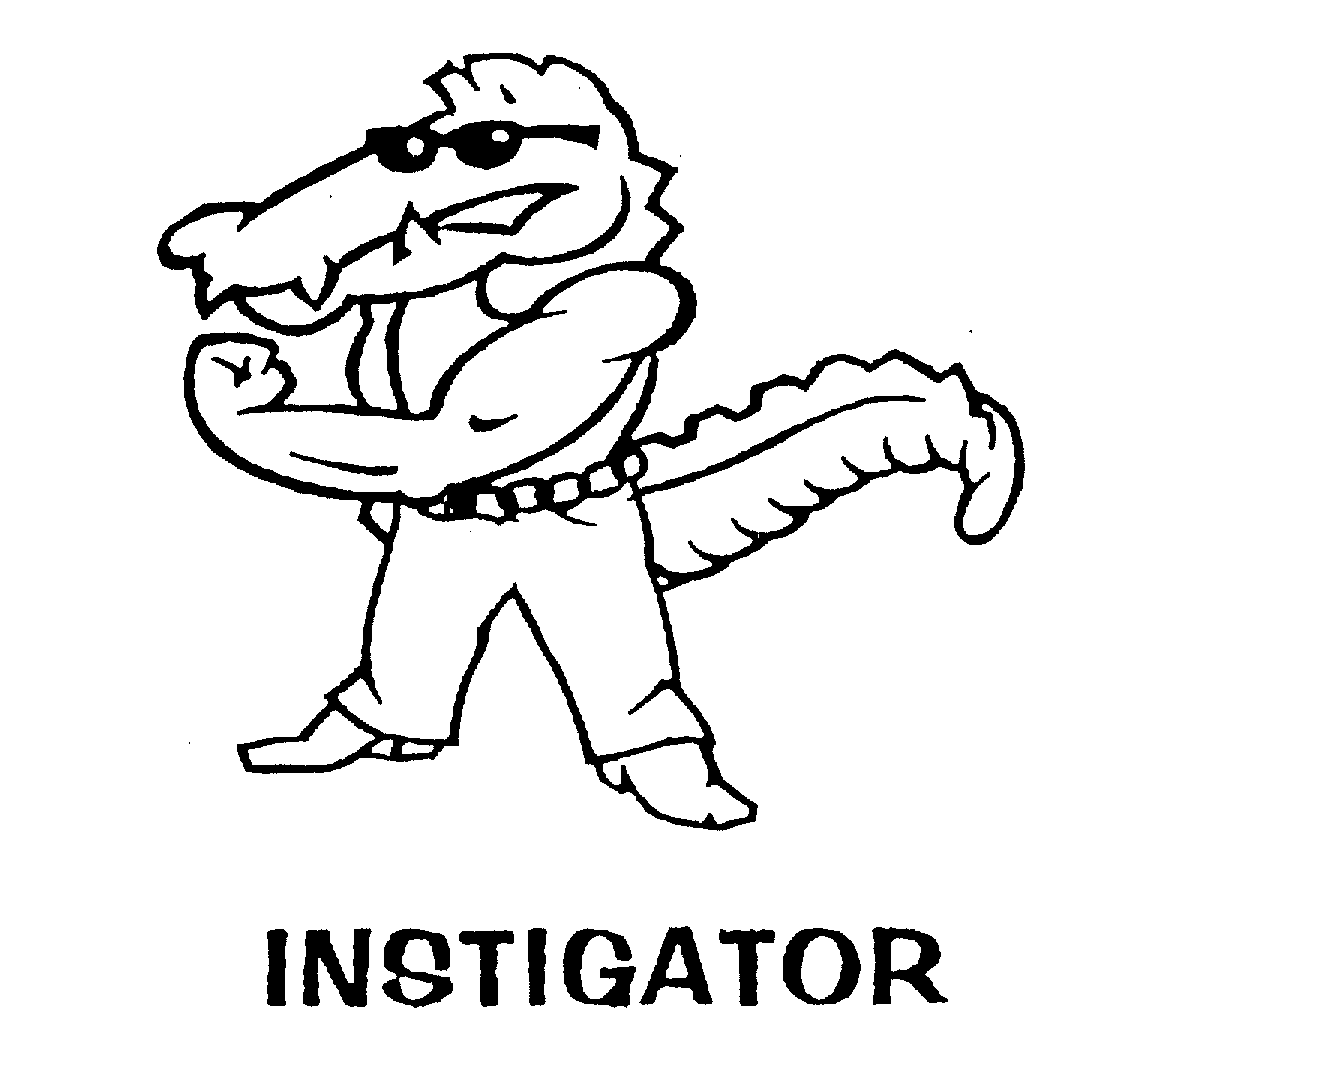  INSTIGATOR